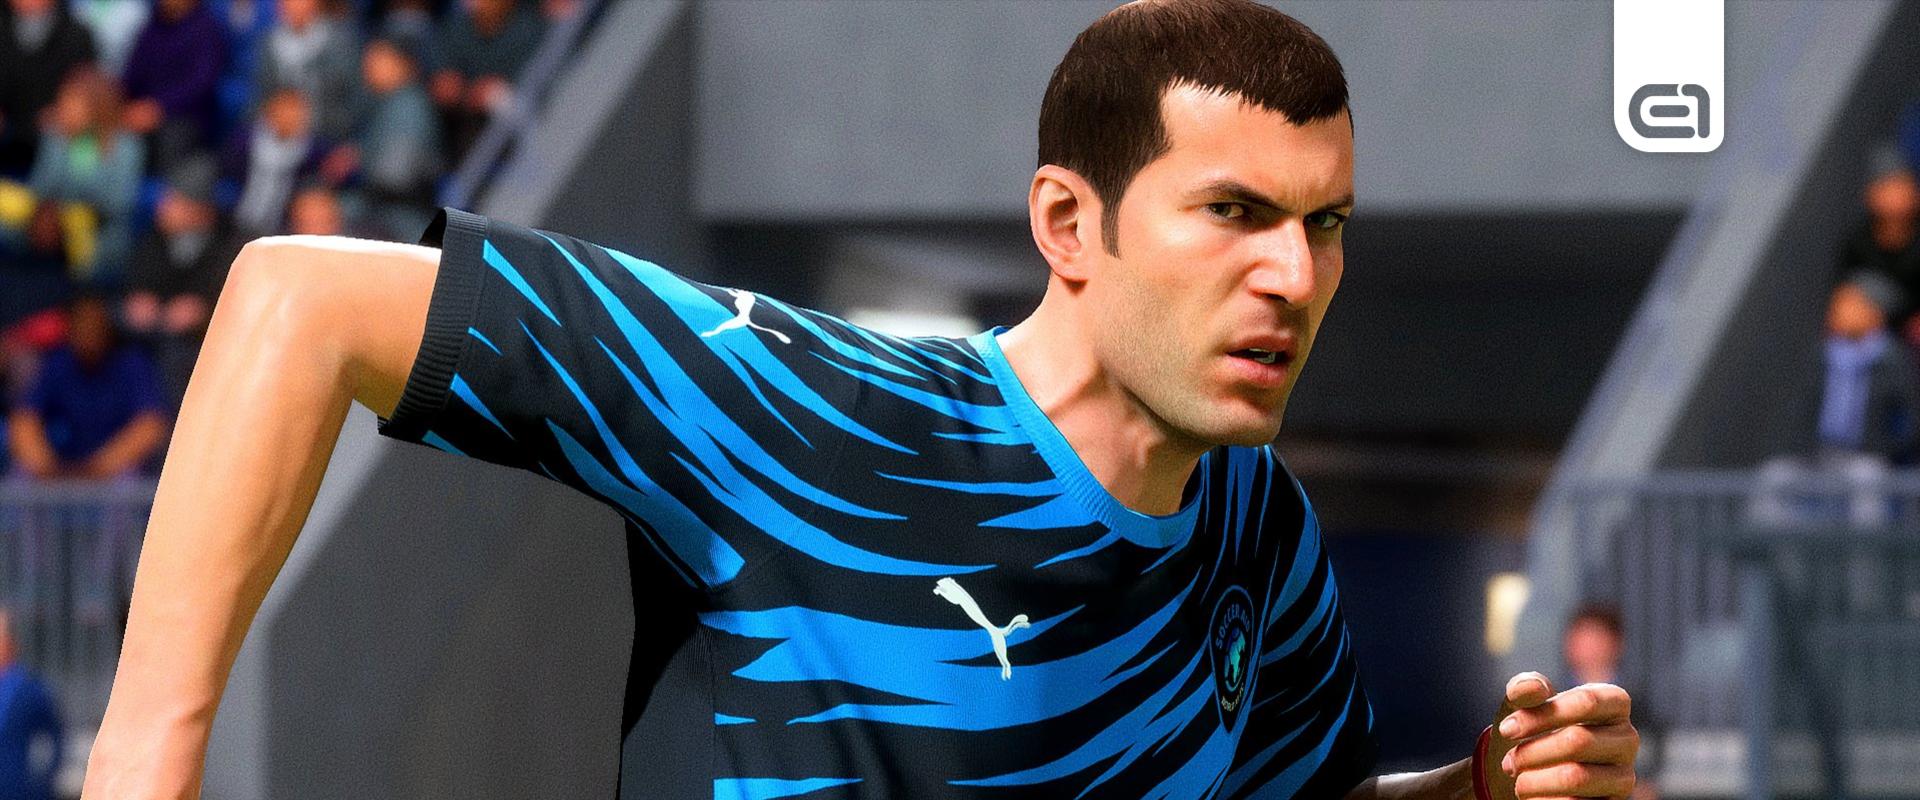 Még Zidane is kiakadt, hogy milyen arcot kapott az EA Sports FC-ben